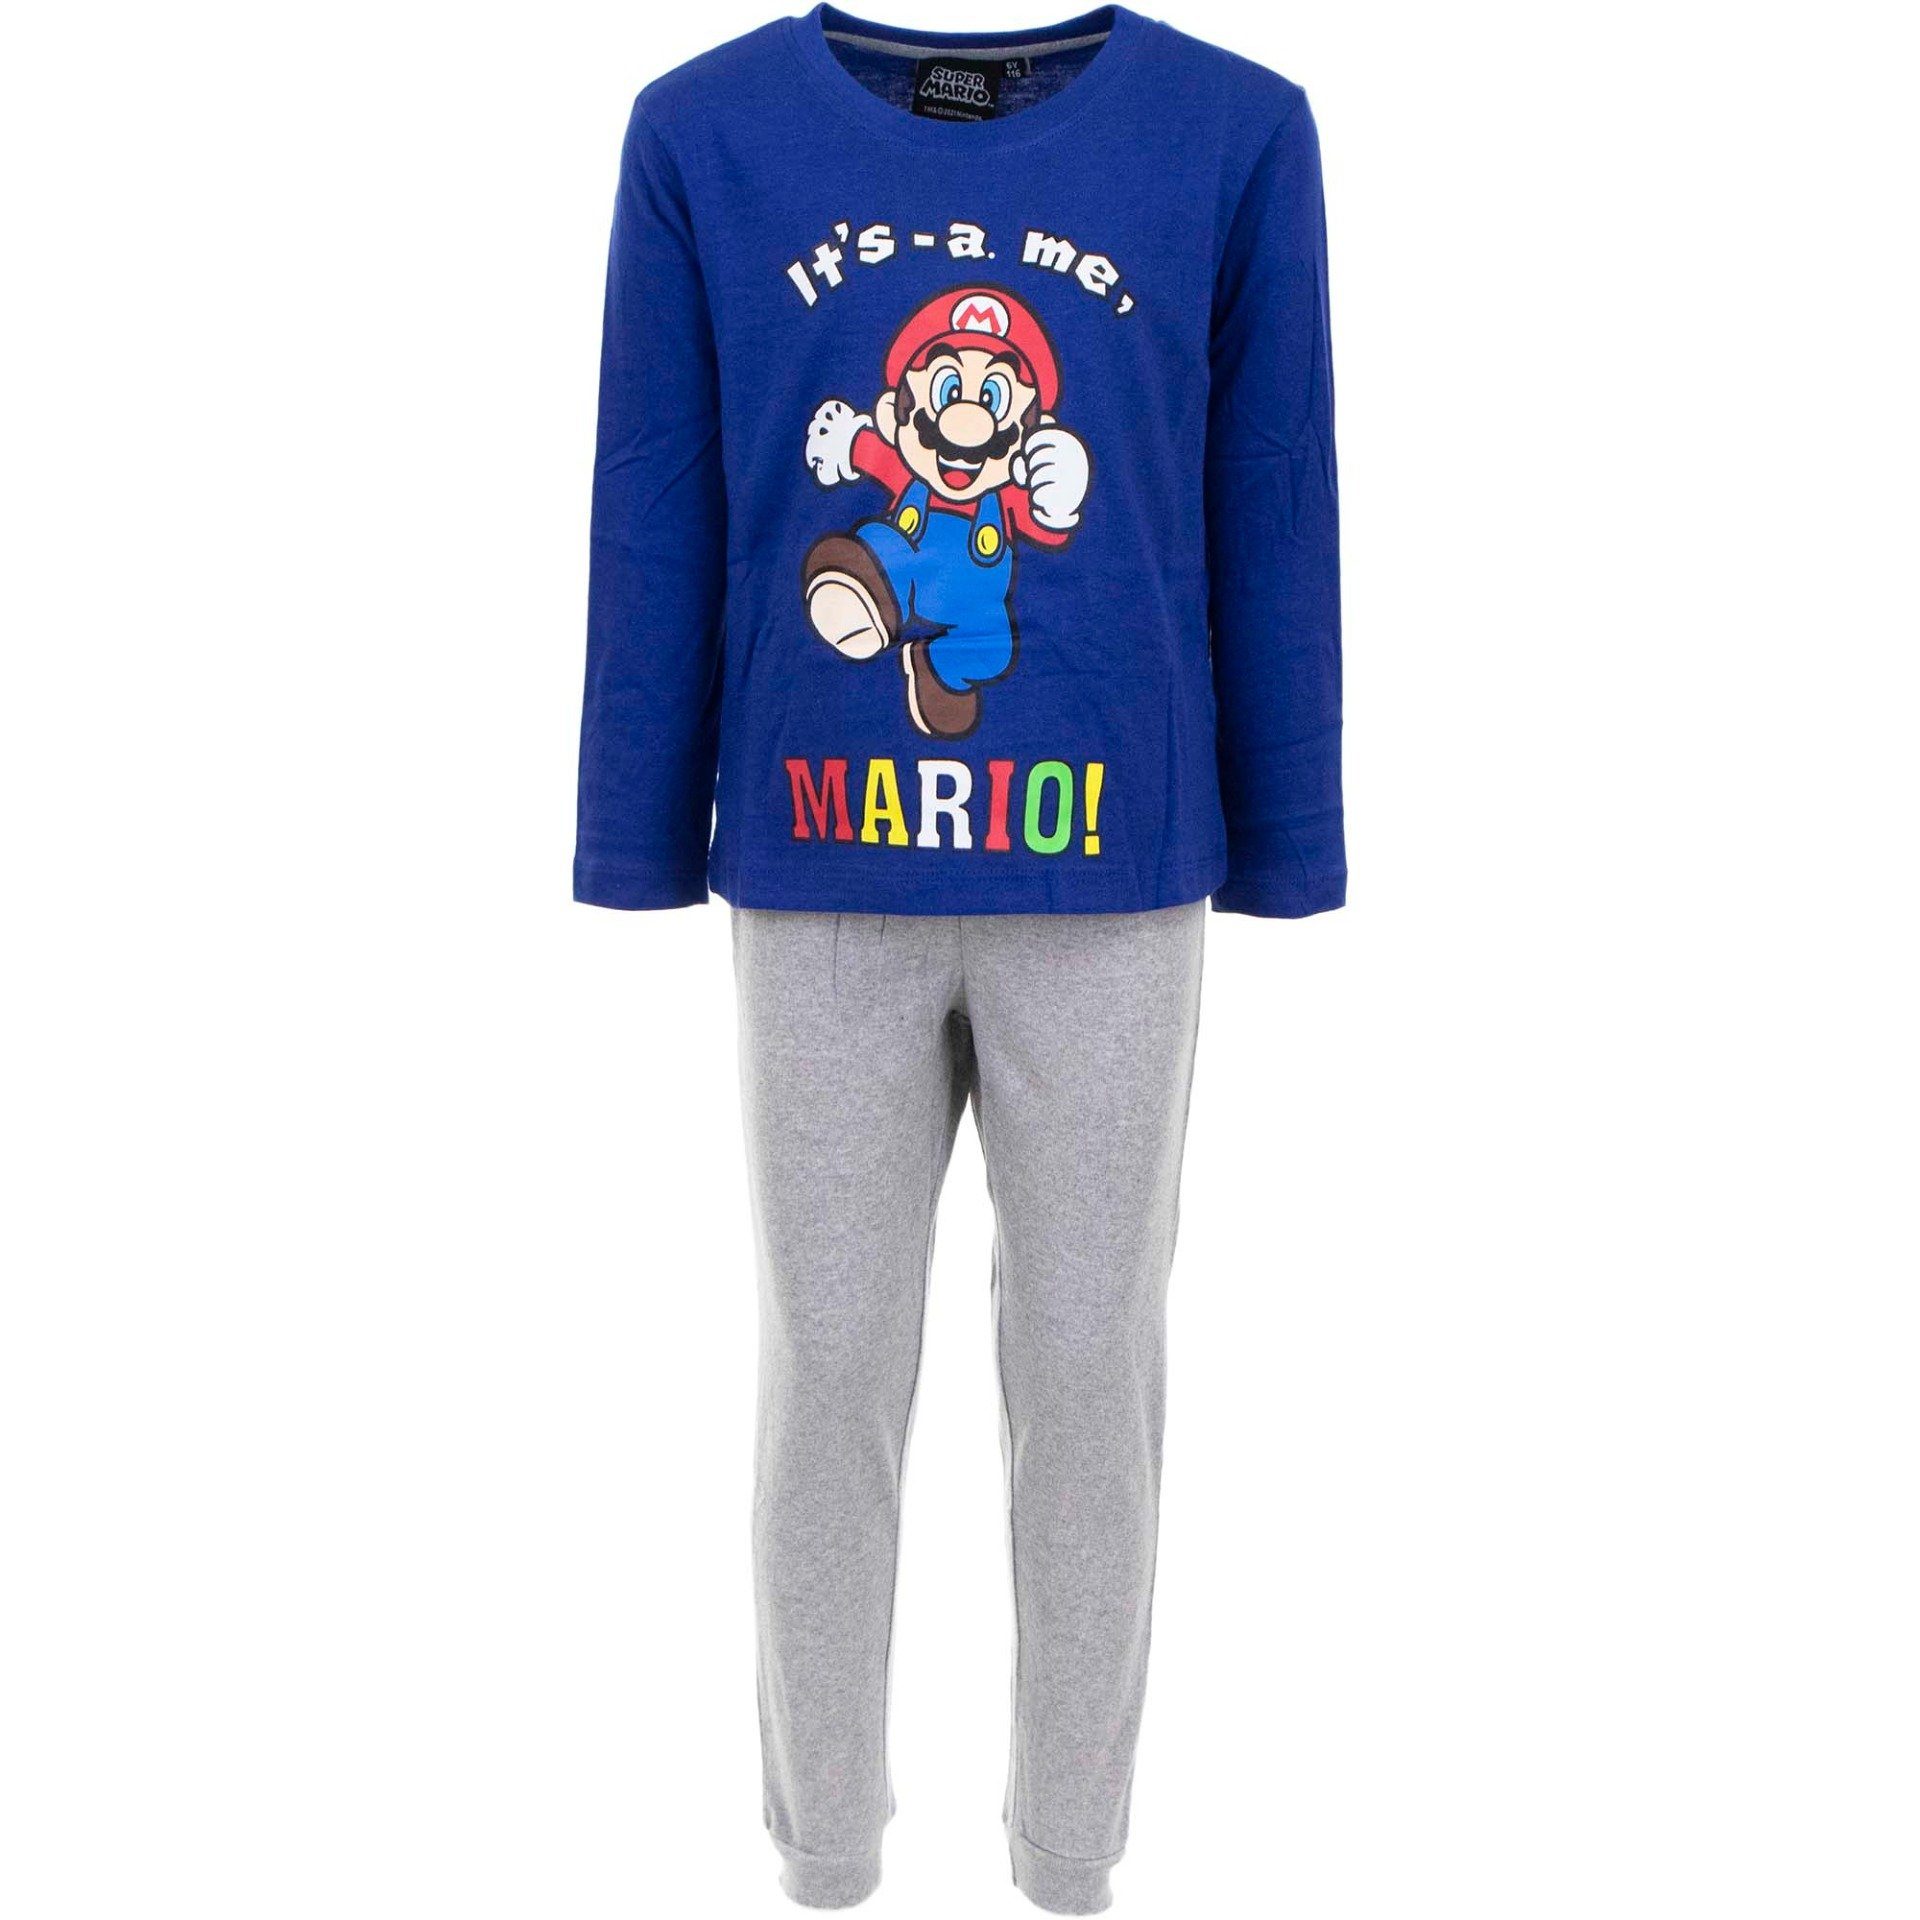 Super Mario Schlafanzug »Super Mario langer Schlafanzug Its a me Pyjama  Blau - Grau Gr. 98 104 110 116 122 128« online kaufen | OTTO